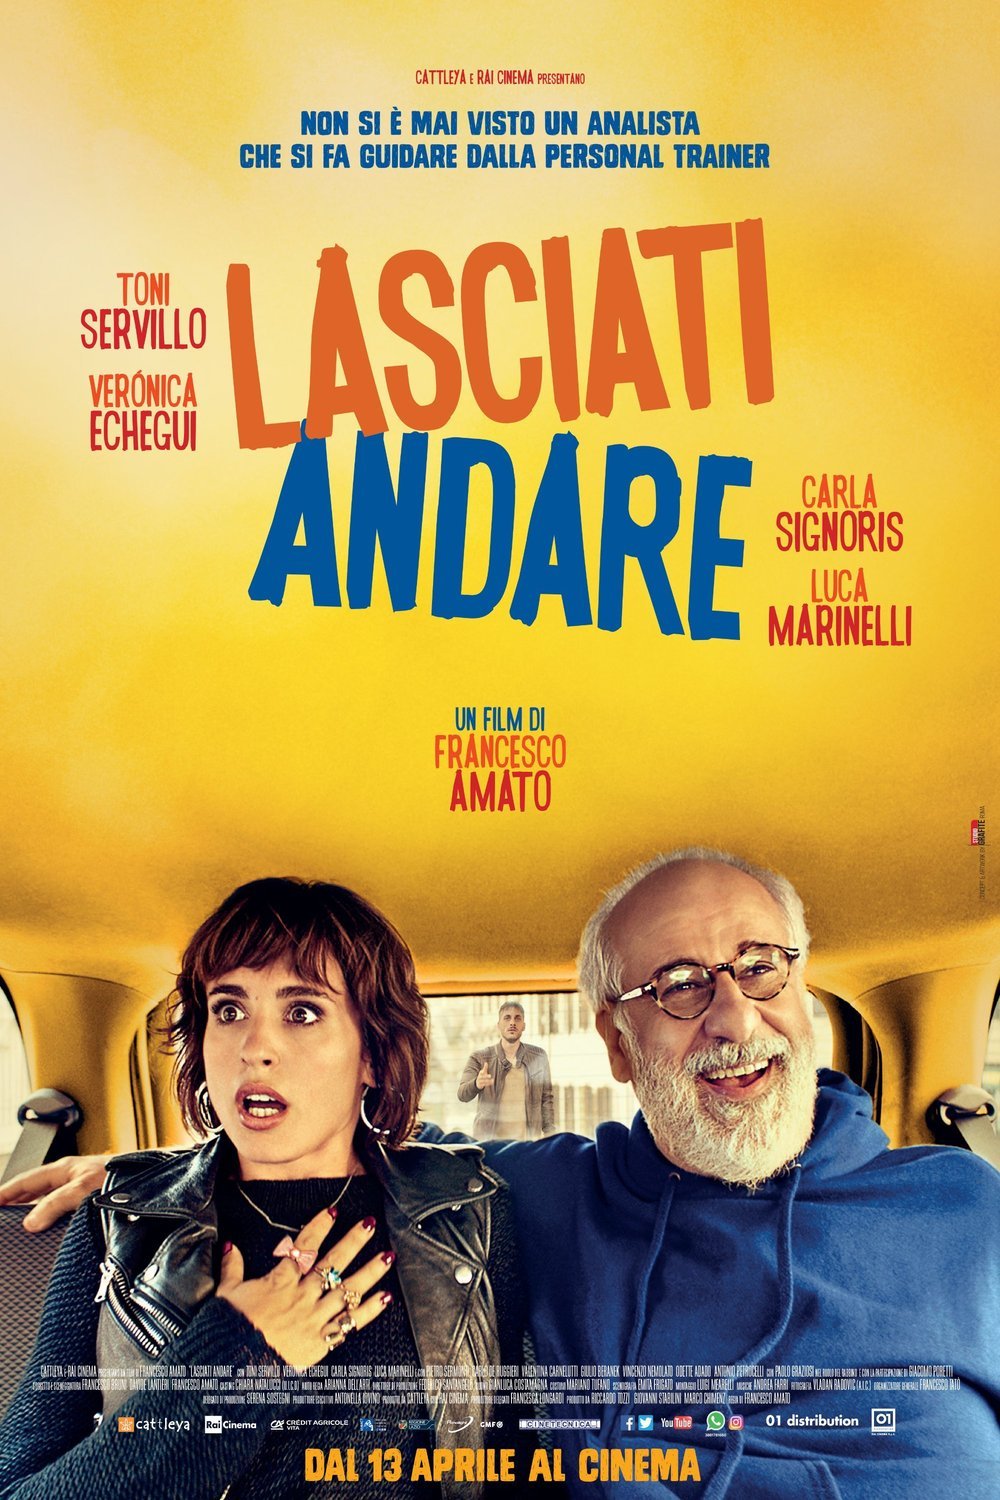 Italian poster of the movie Lasciati andare